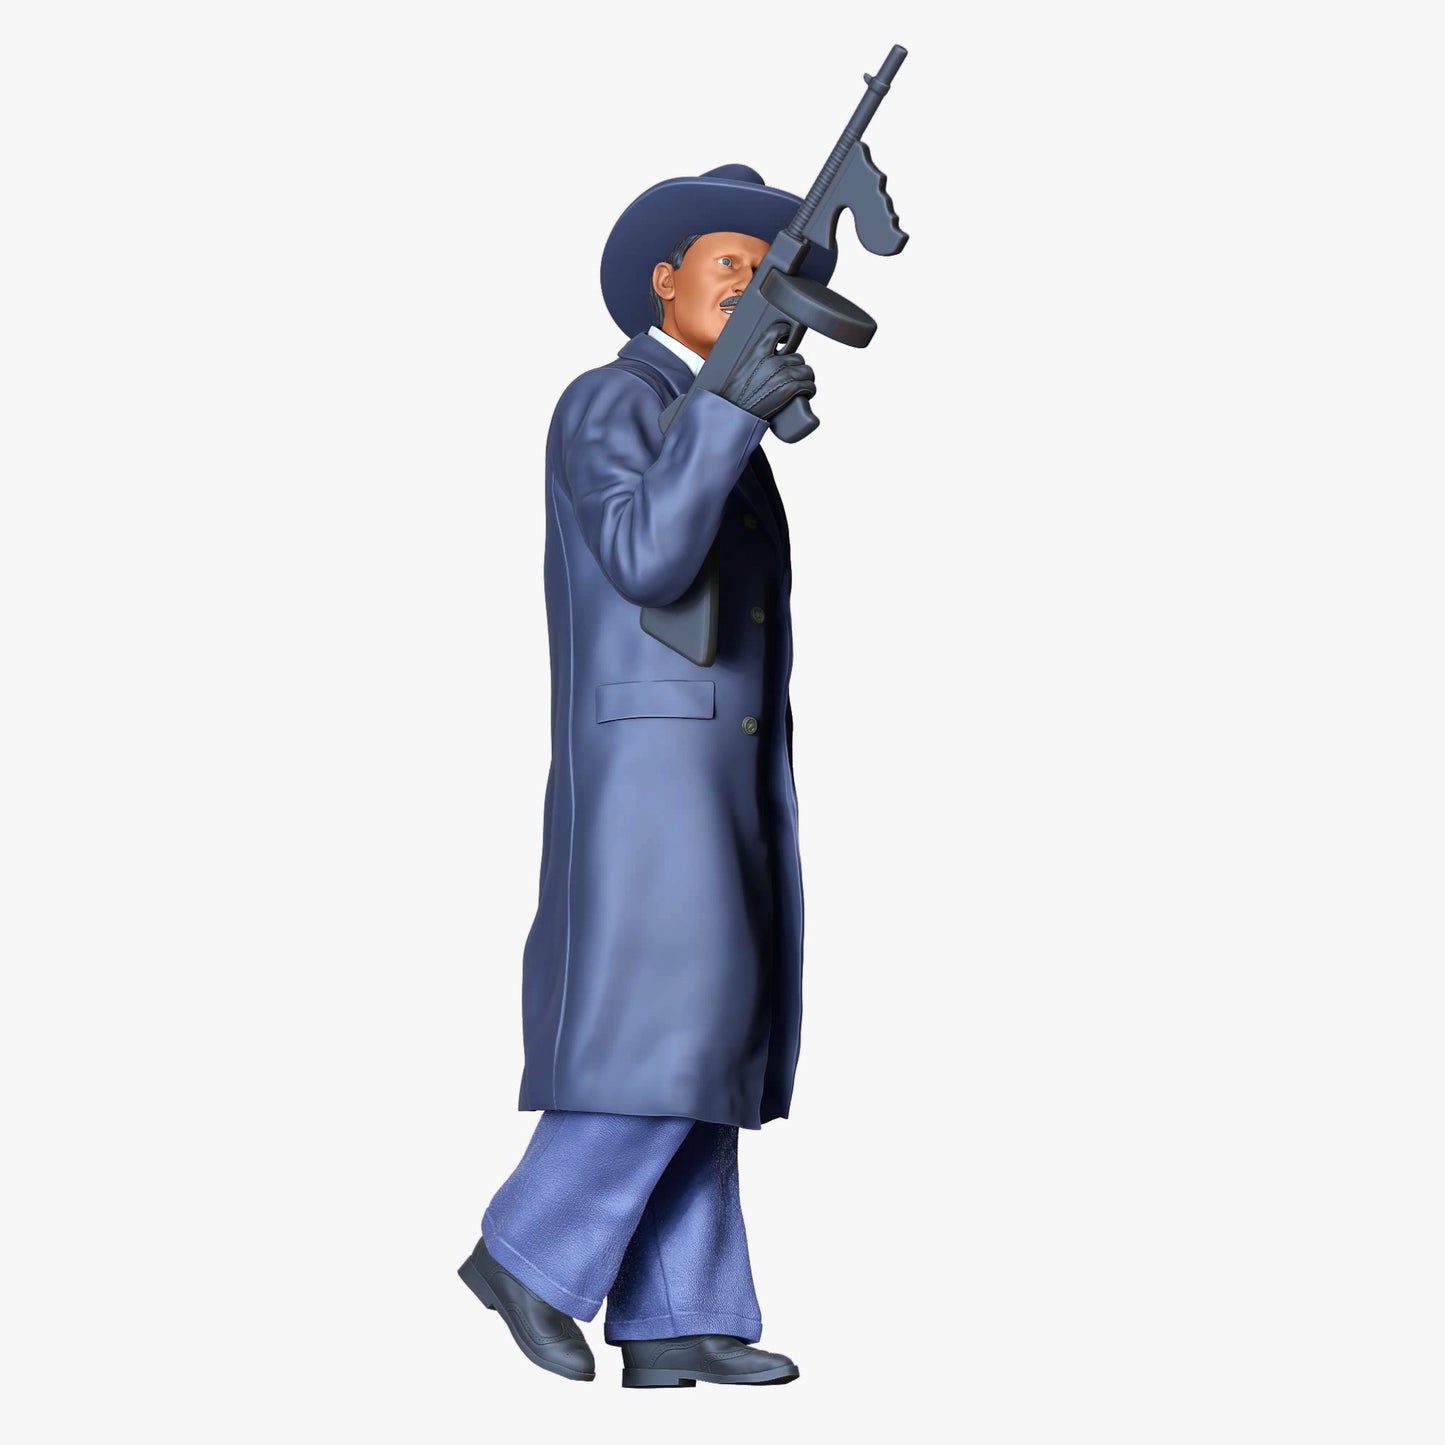 Produktfoto Diorama und Modellbau Miniatur Figur: Mafiosi: Mafia Gangster 1